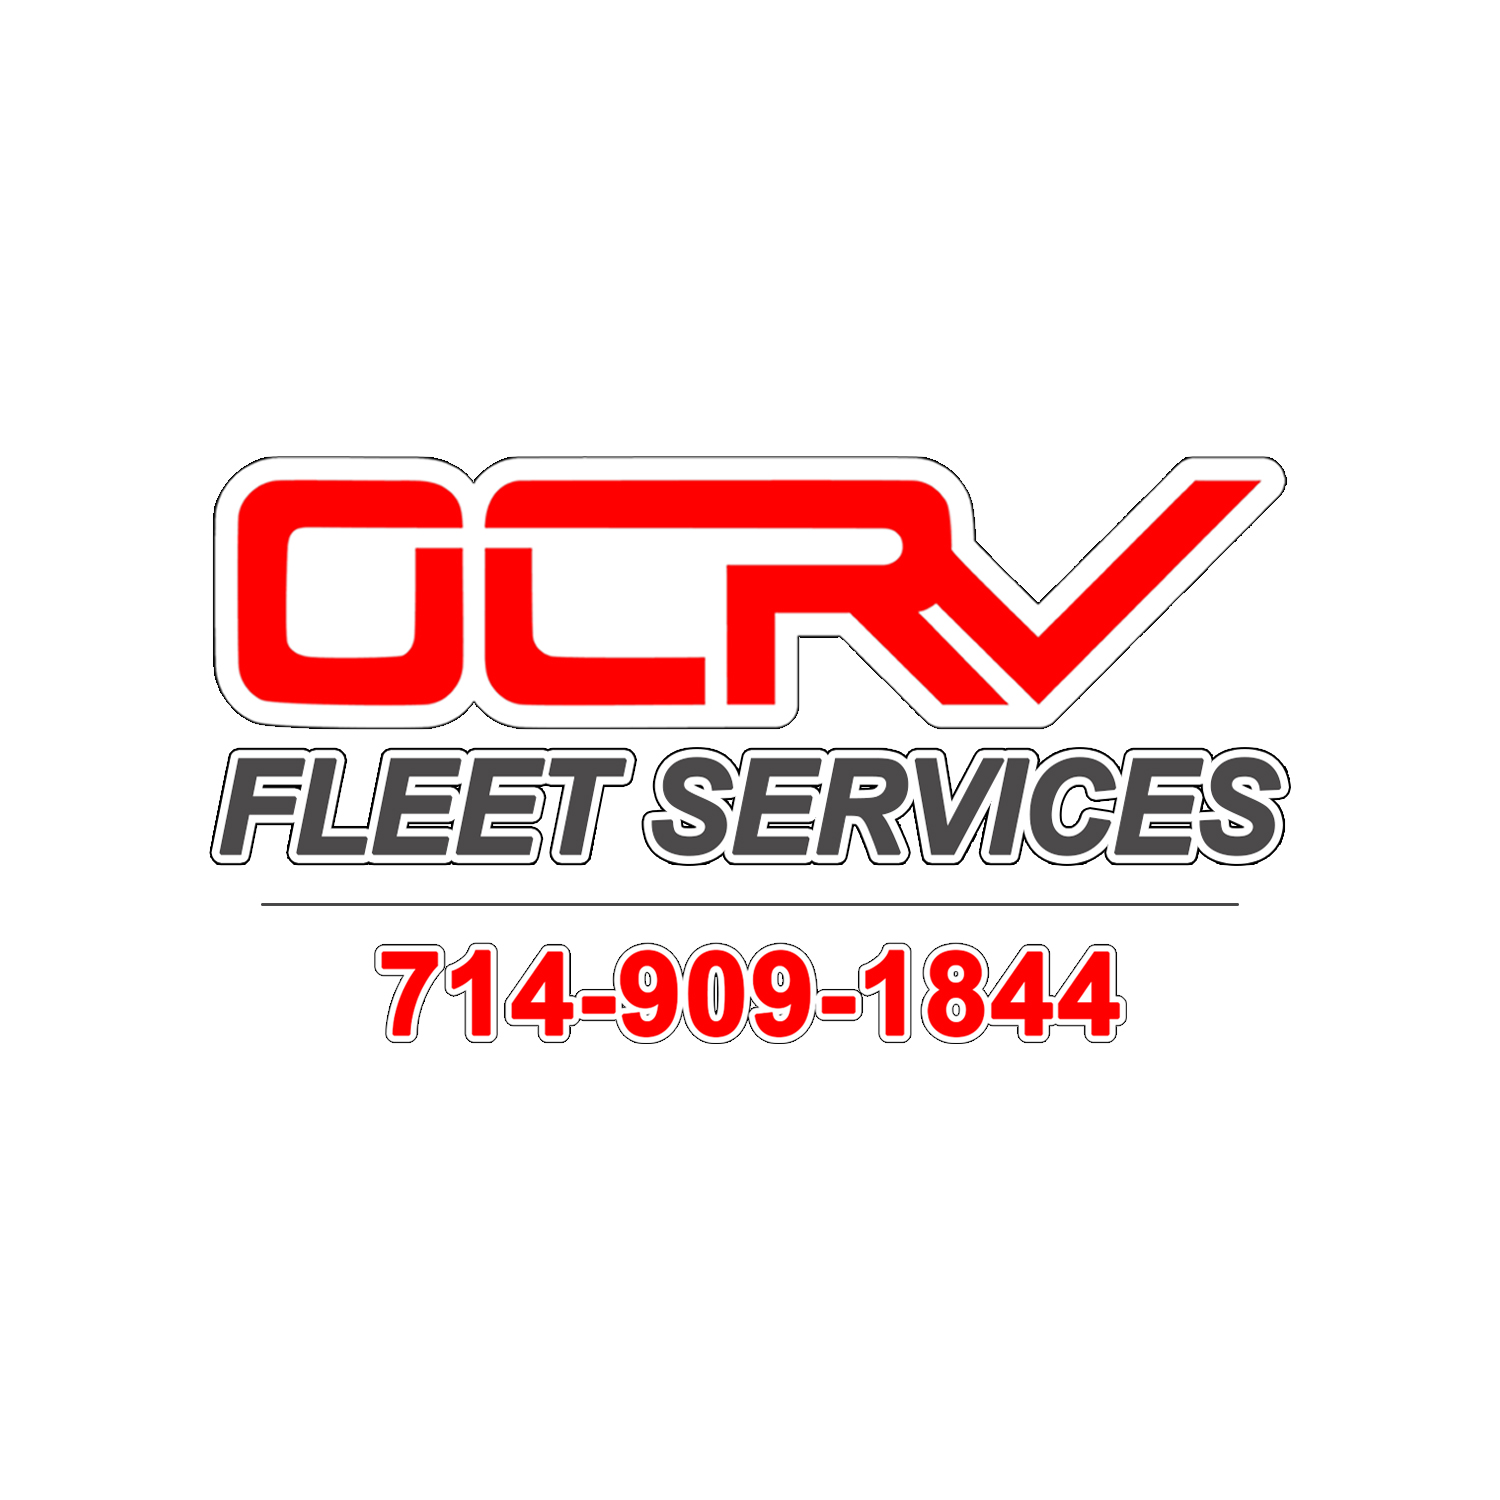 OCRV Fleet Services - Commercial Truck Collision Repair & Paint Shop